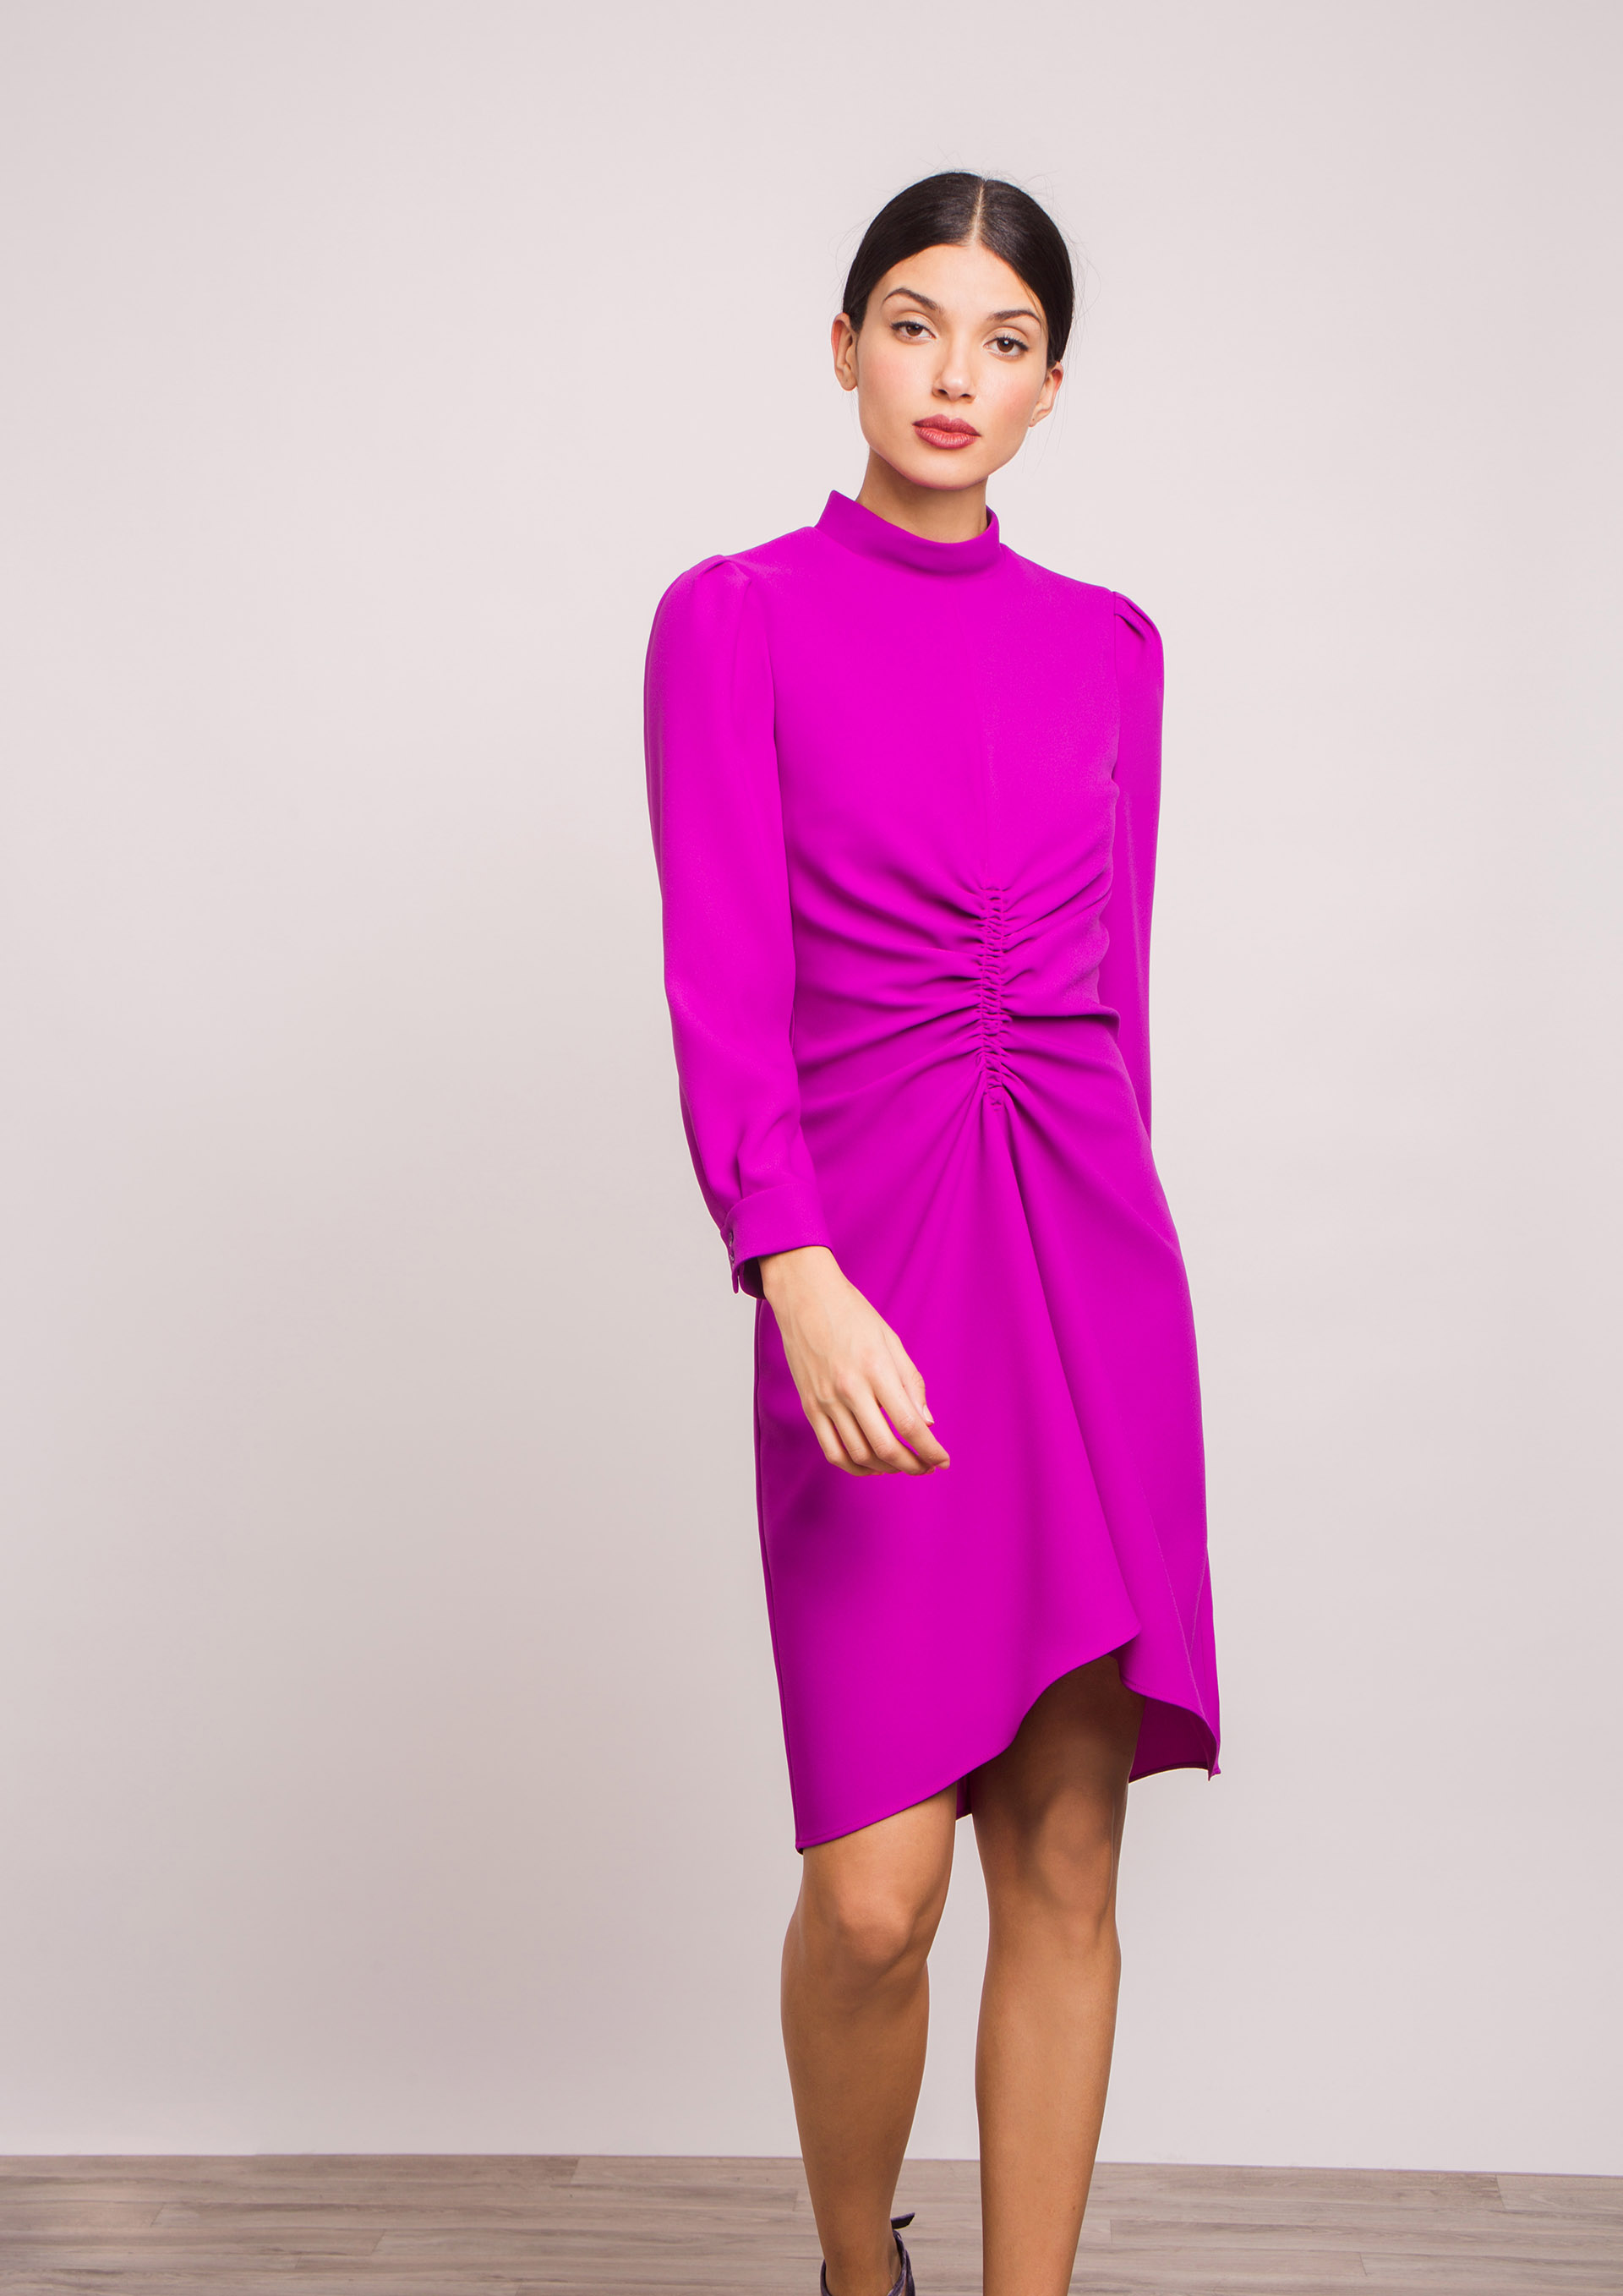 Violet dress.